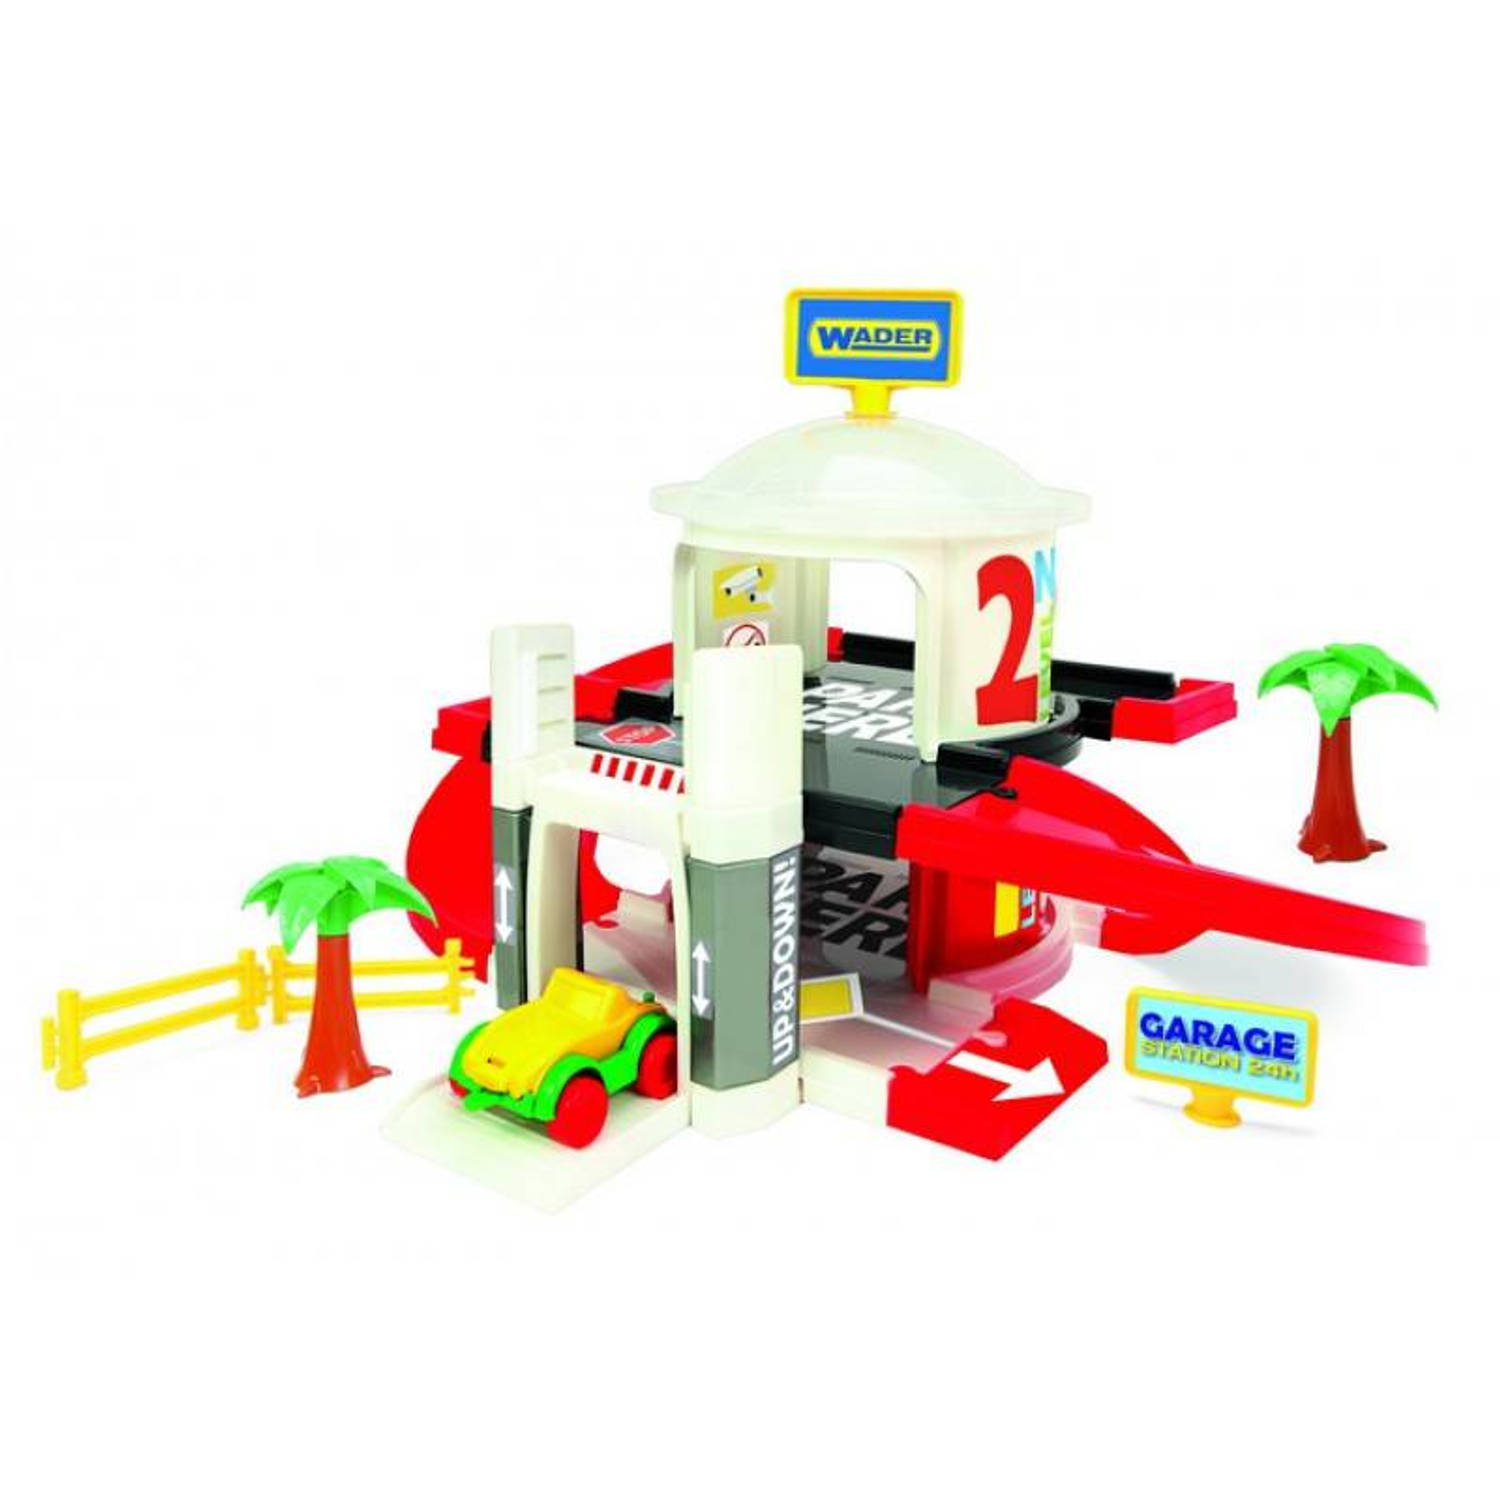 Wader speelgoed Garage met lift 2 levels